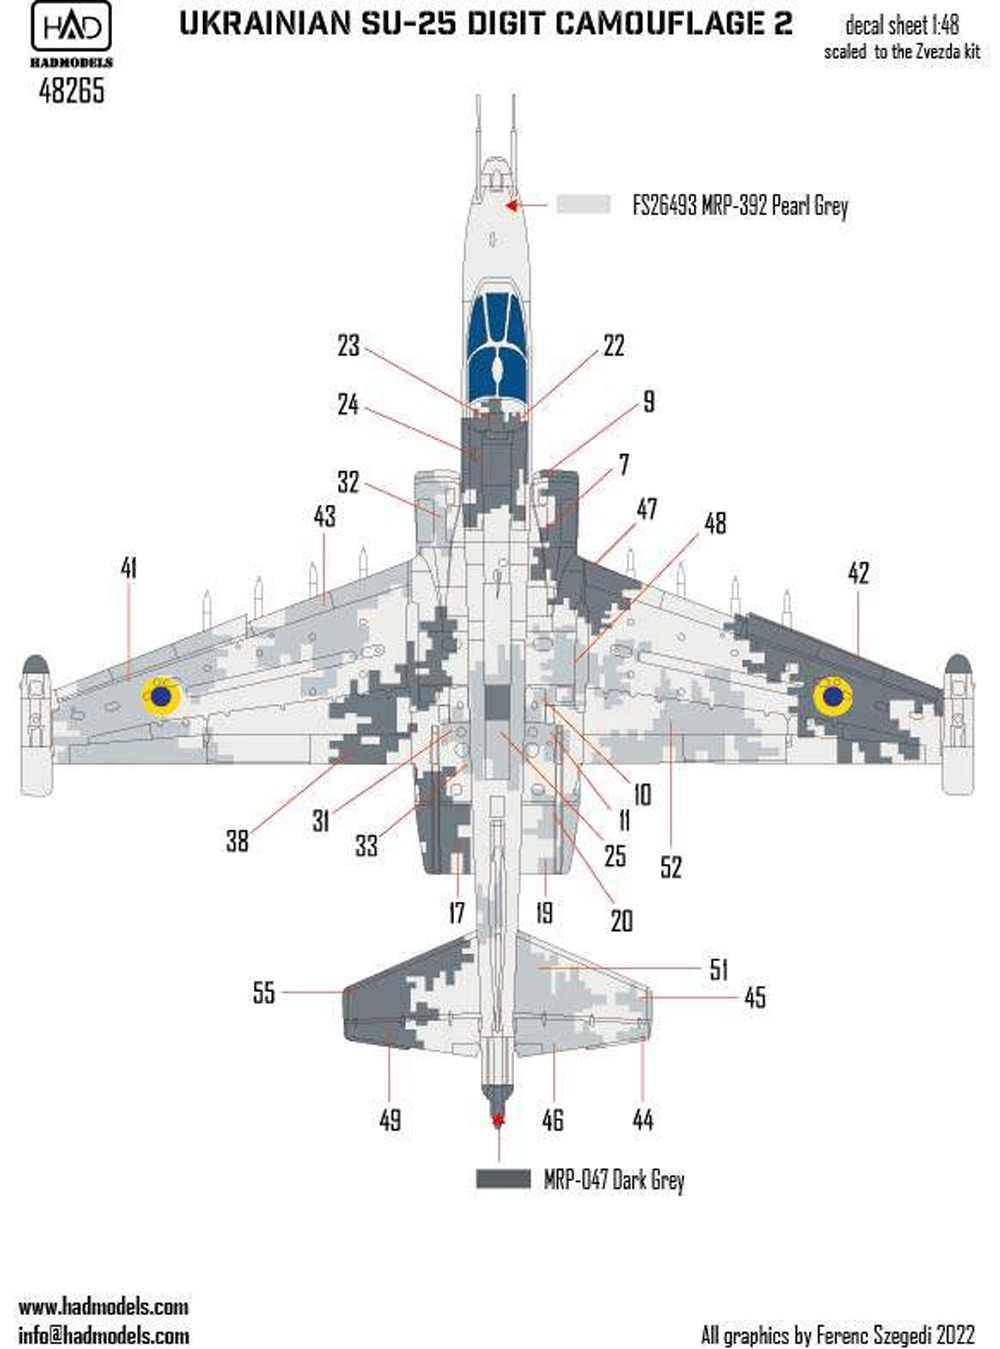 Su-25 フロッグフット ウクライナ デジタル迷彩 2 デカール (ズべズダ用) デカール (HAD MODELS 1/48 デカール No.48265) 商品画像_2